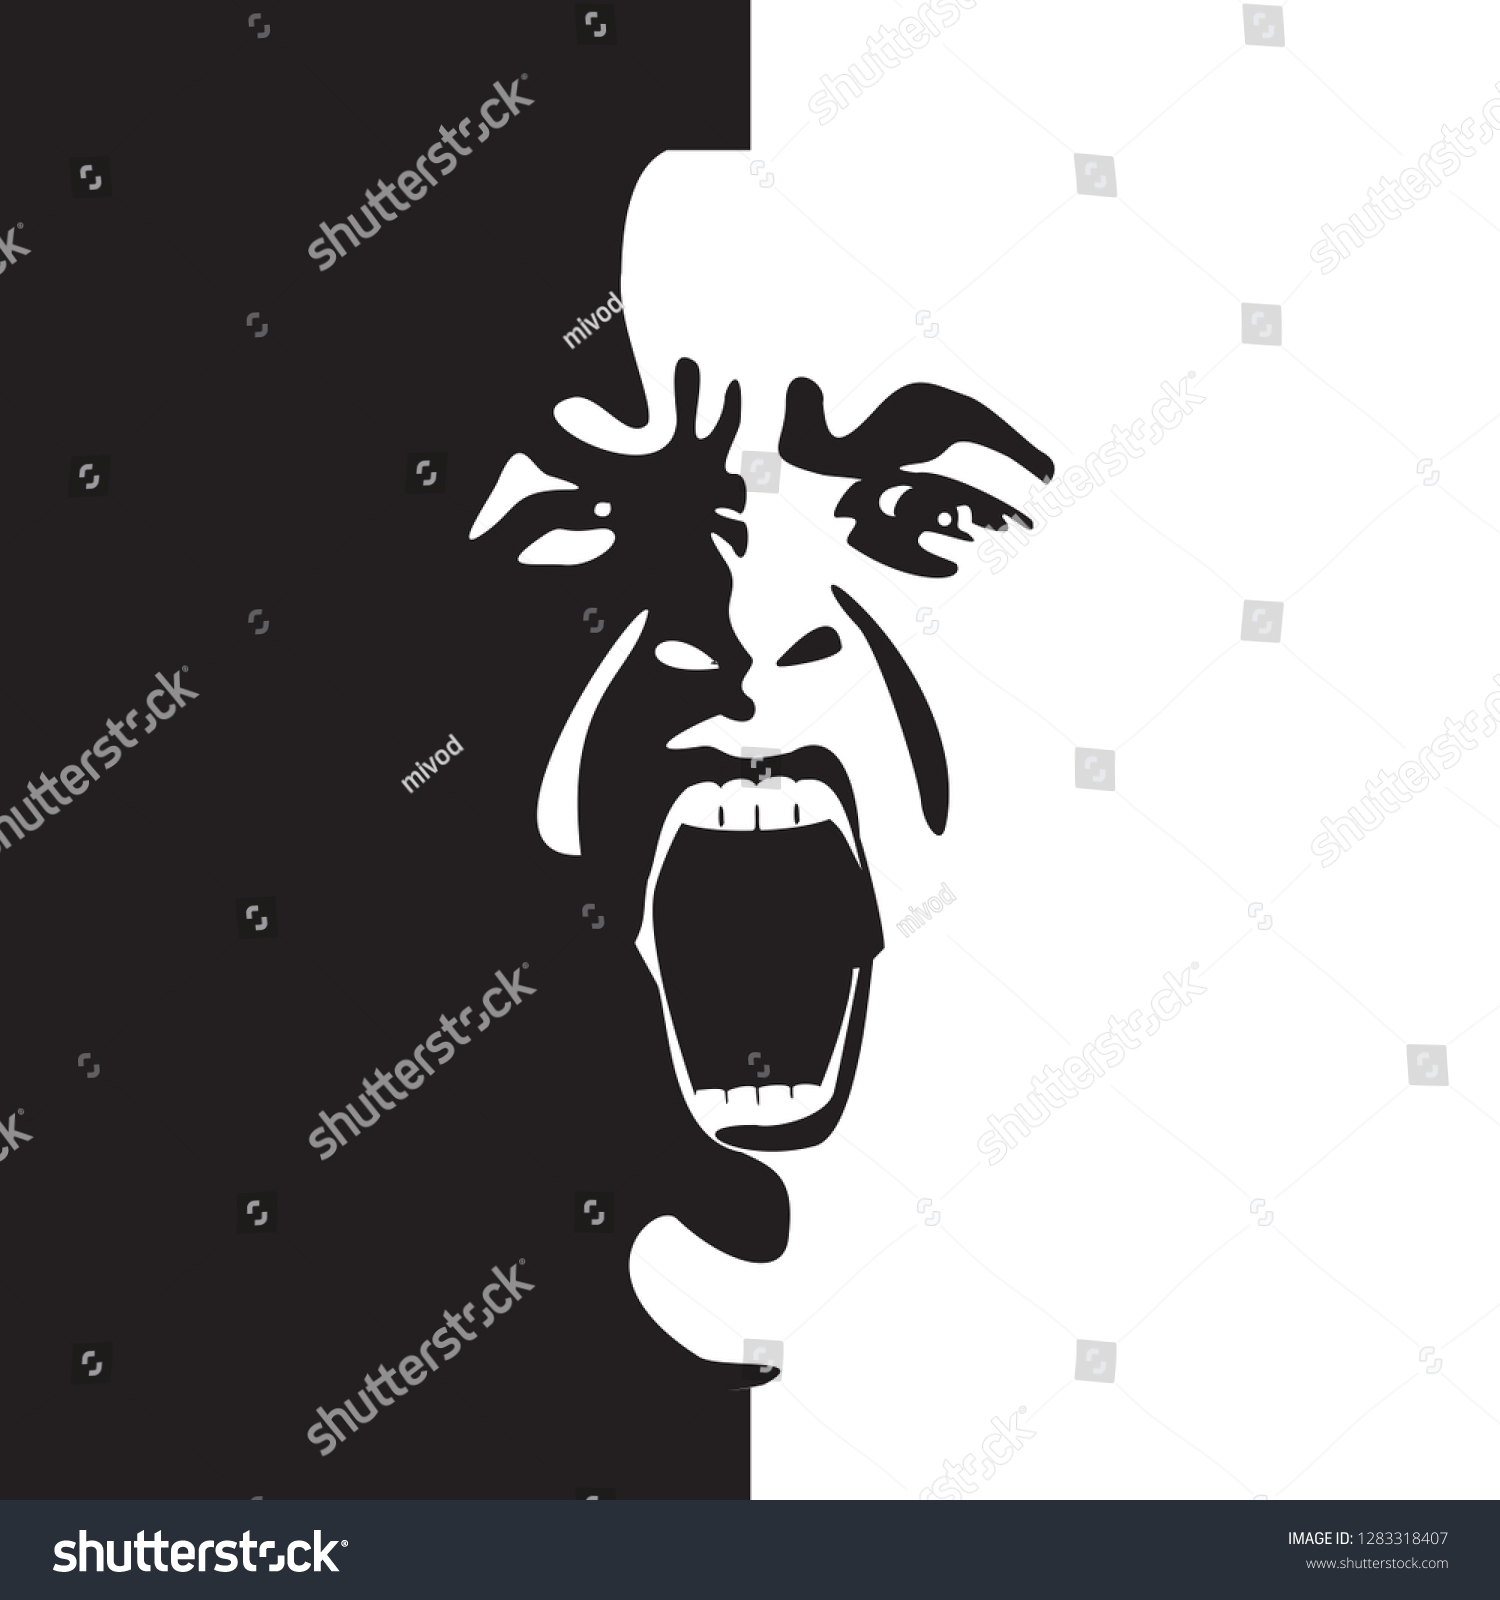 白黒のベクター画像で叫ぶ顔 口を開いて叫ぶ男の感情的な叫び 表情が落書き風に描かれる のベクター画像素材 ロイヤリティフリー